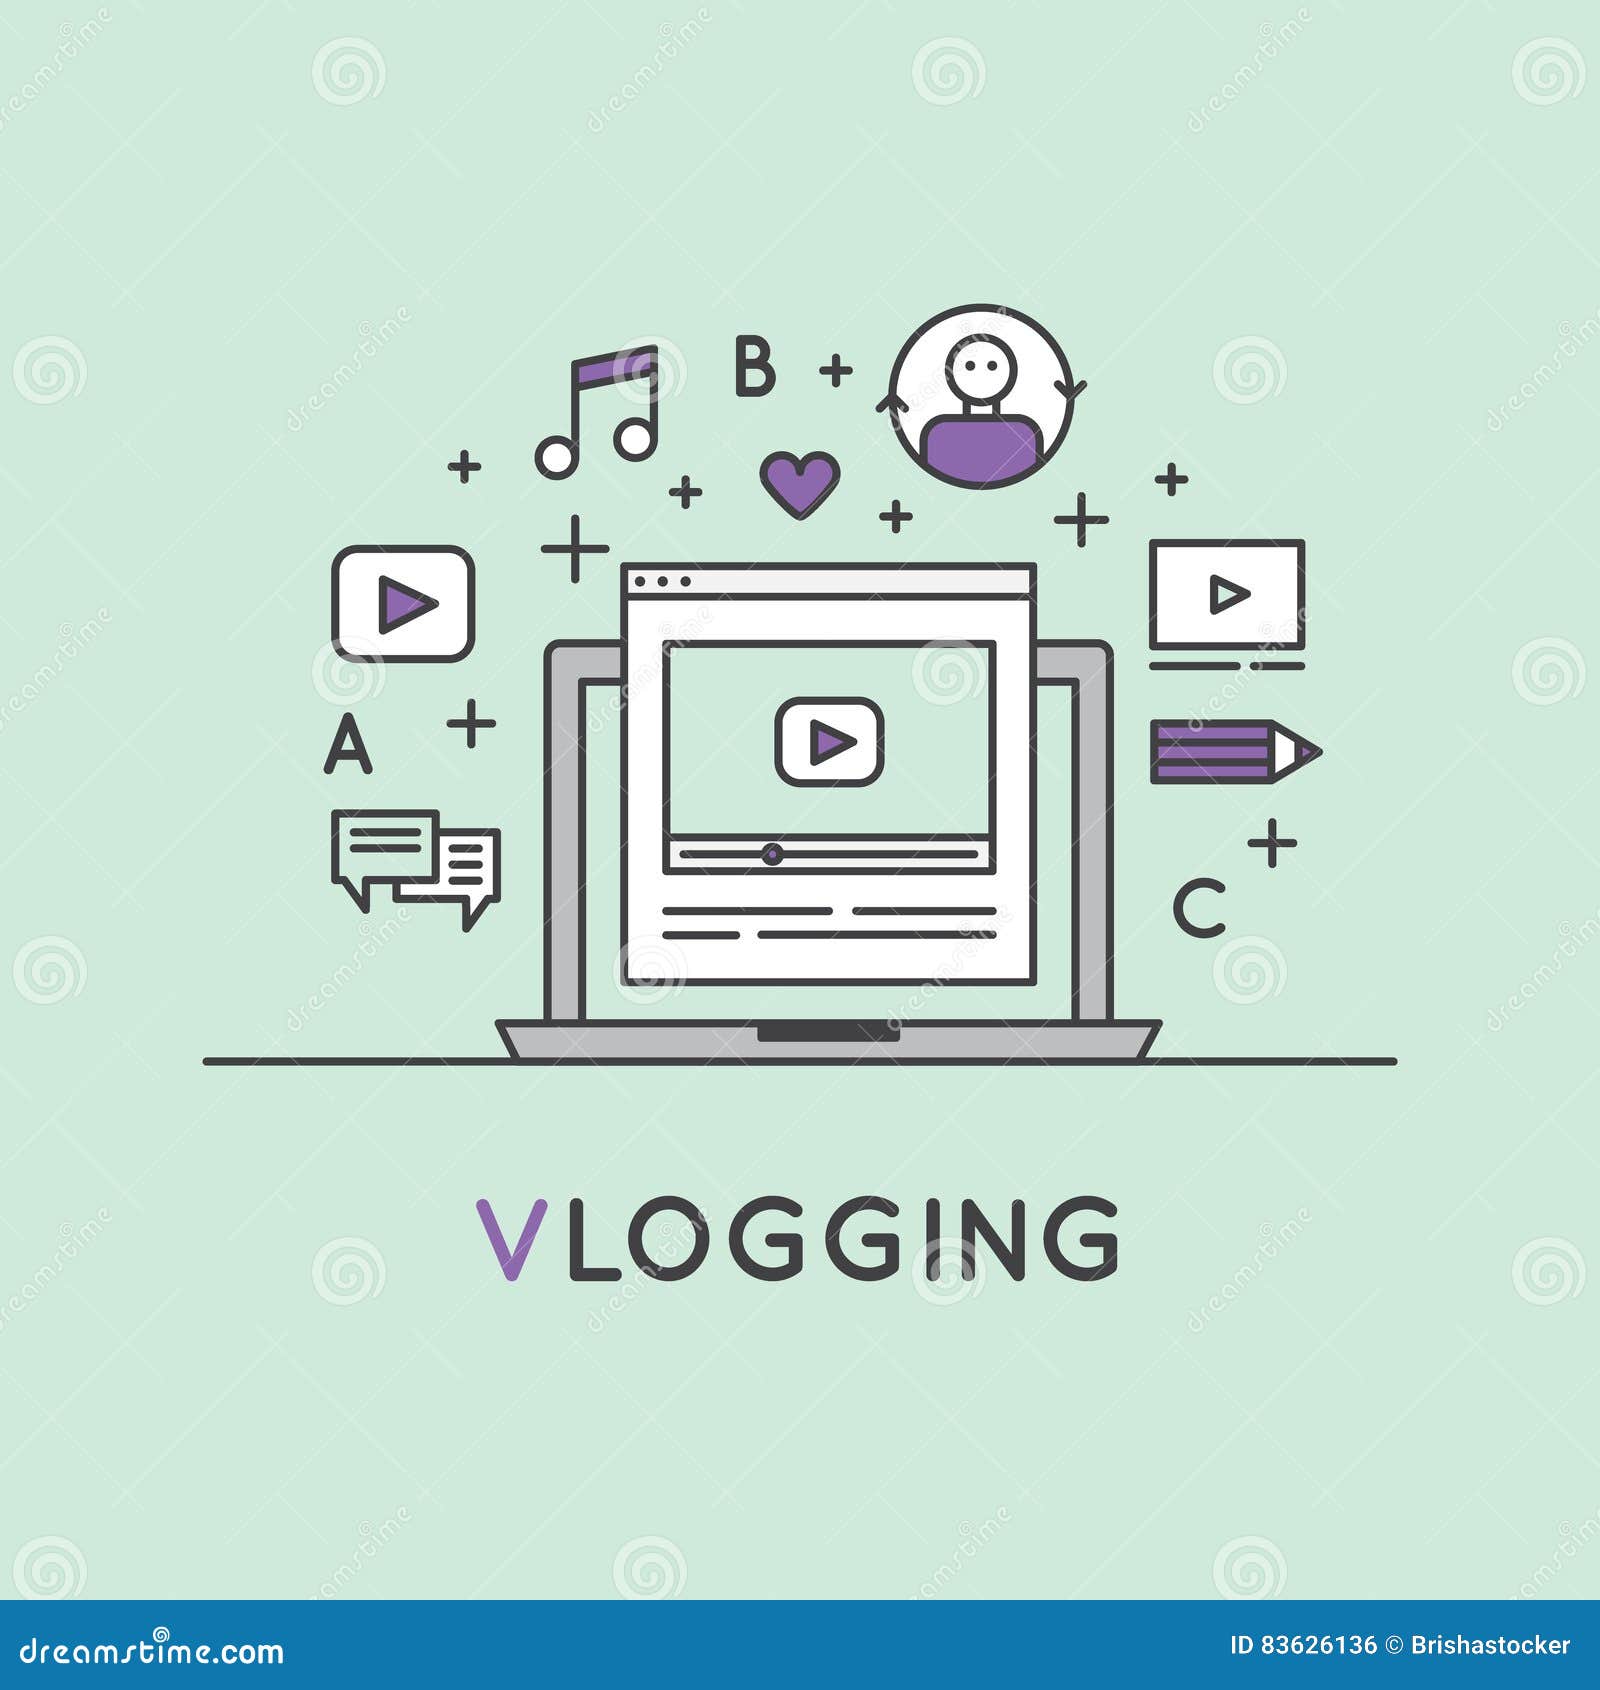  of video blogging or vlogging